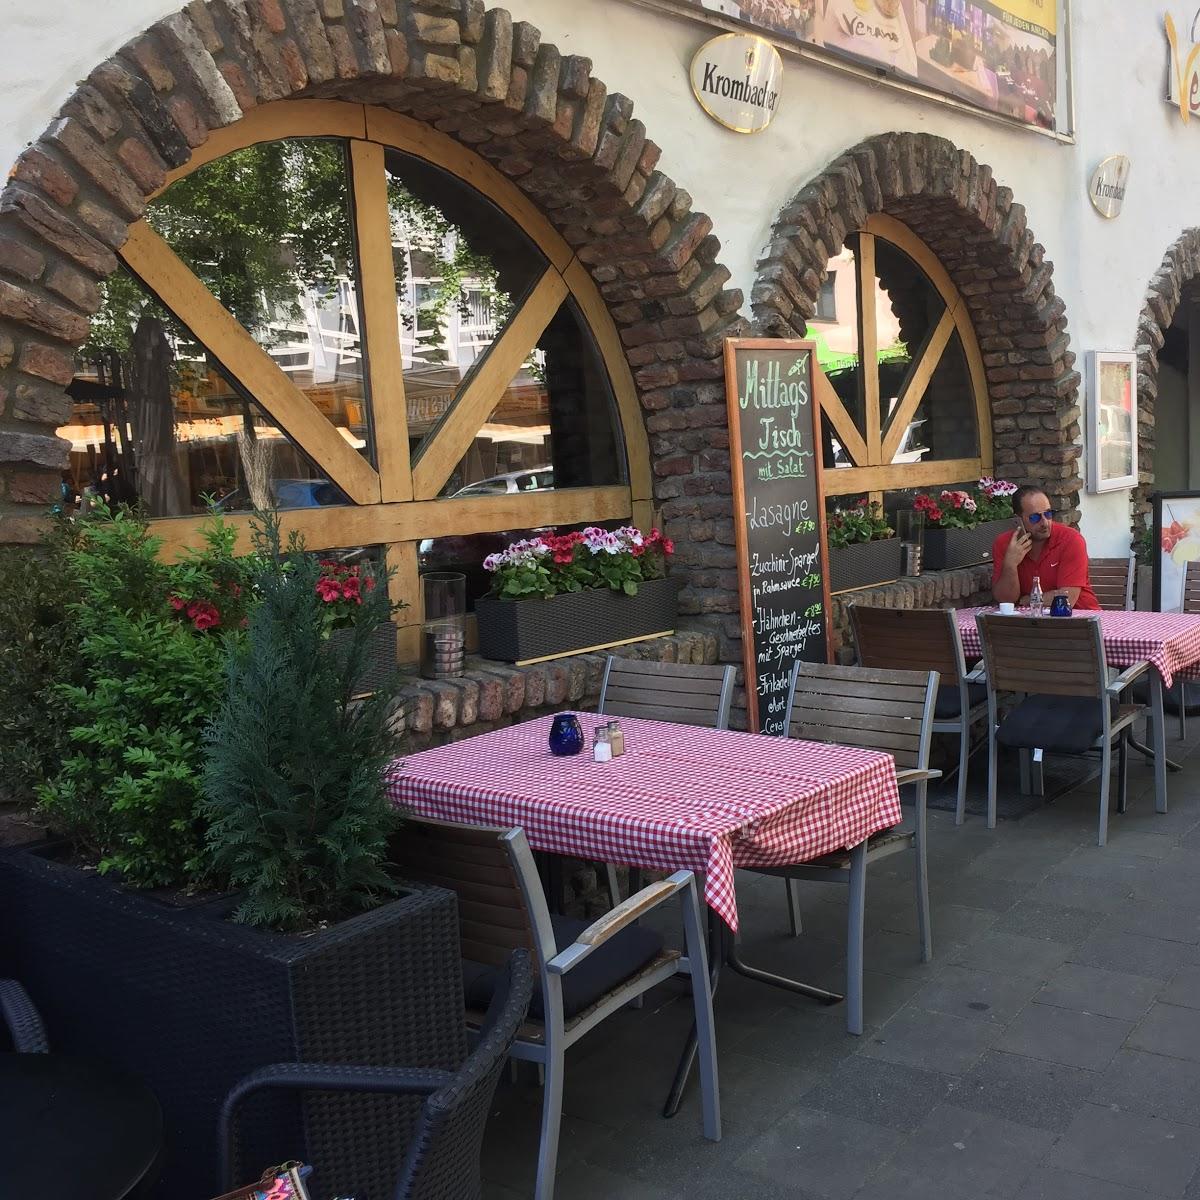 Restaurant "Restaurant Verano" in  Aachen